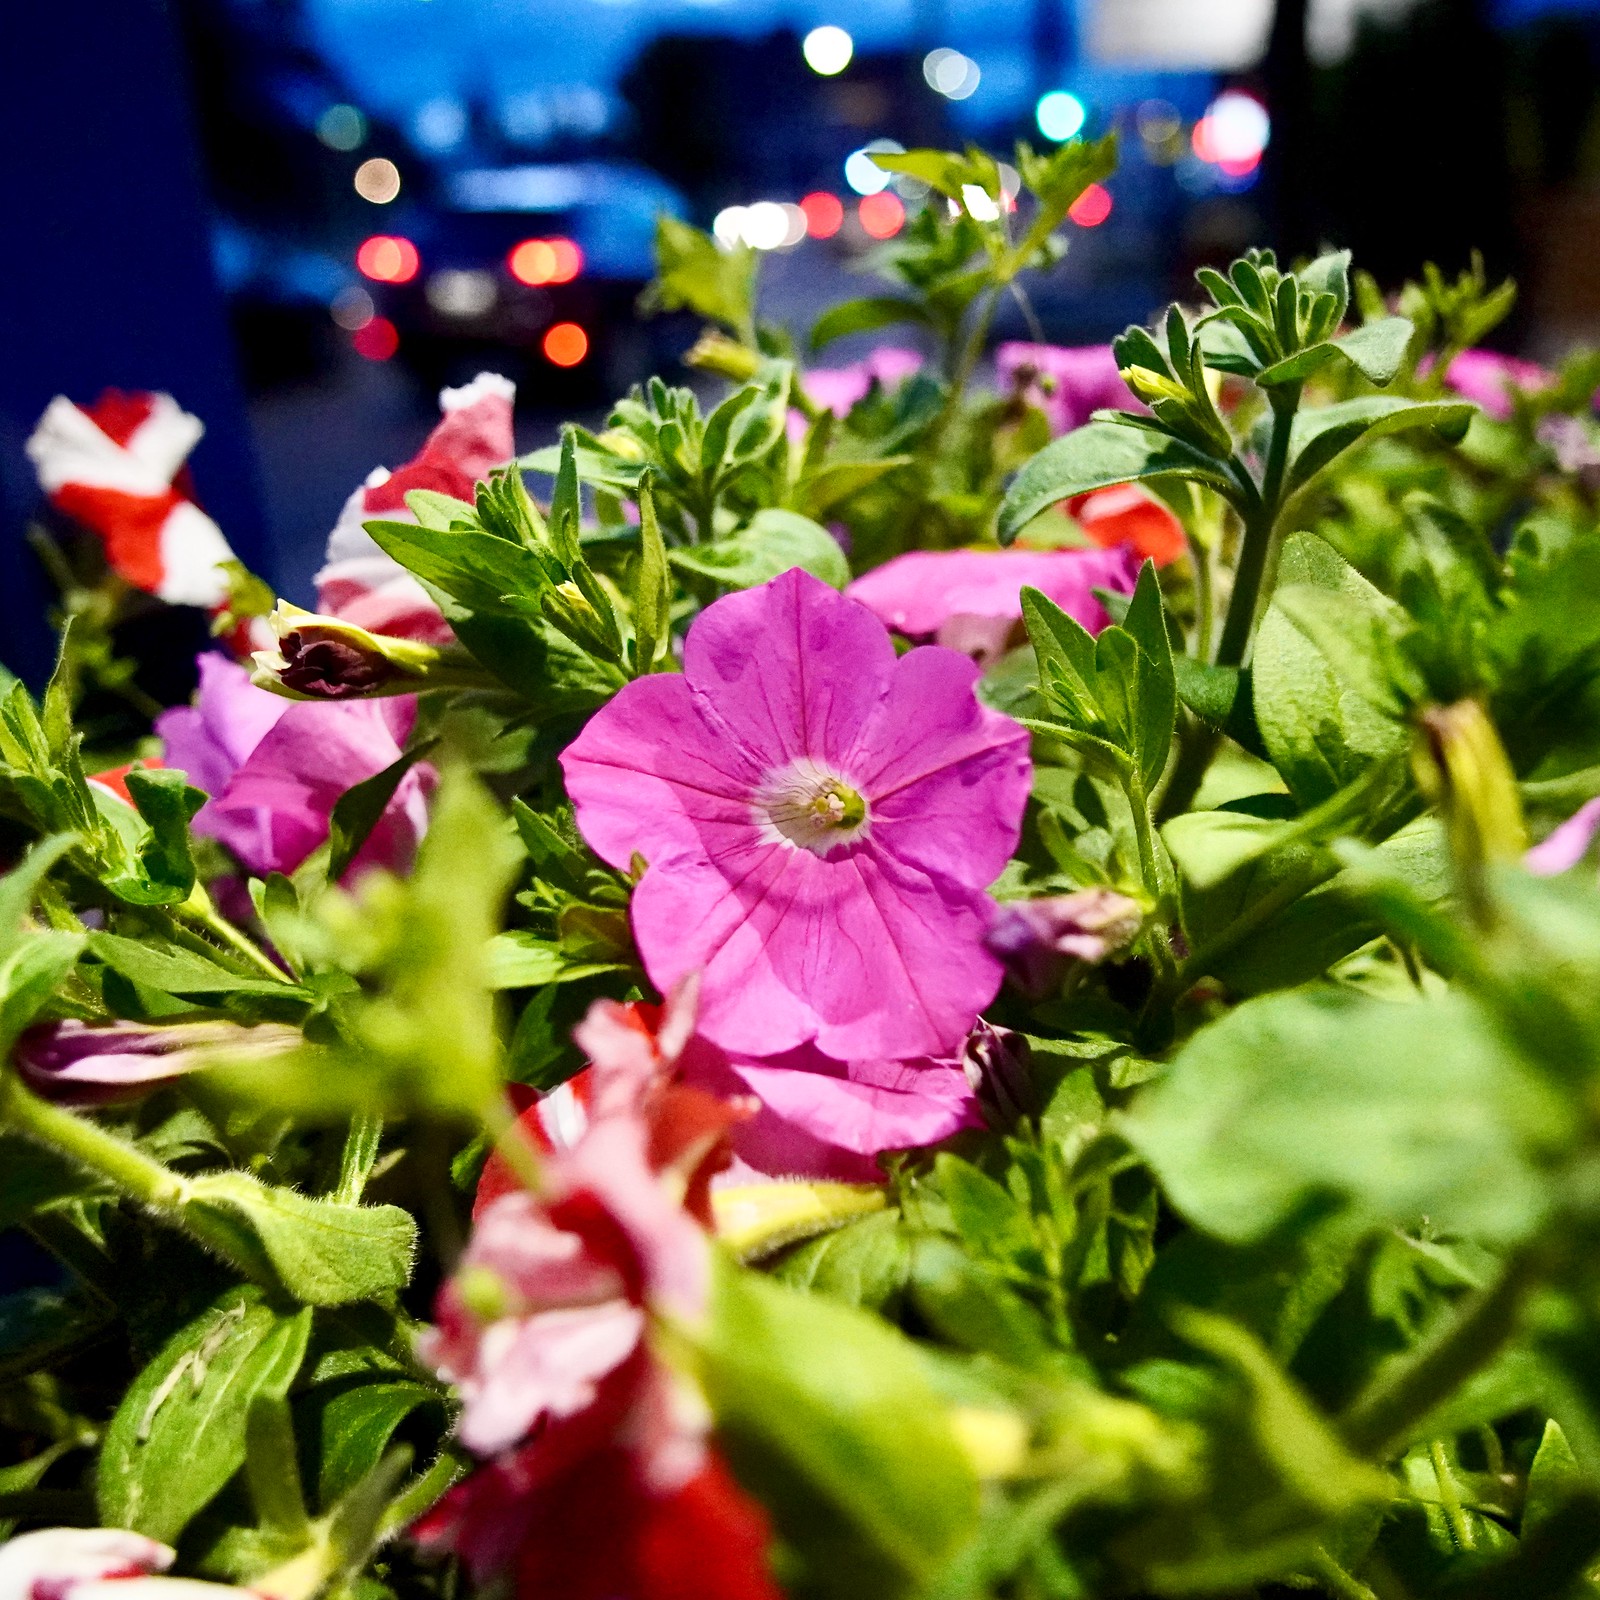 Sidewalk flowerbed